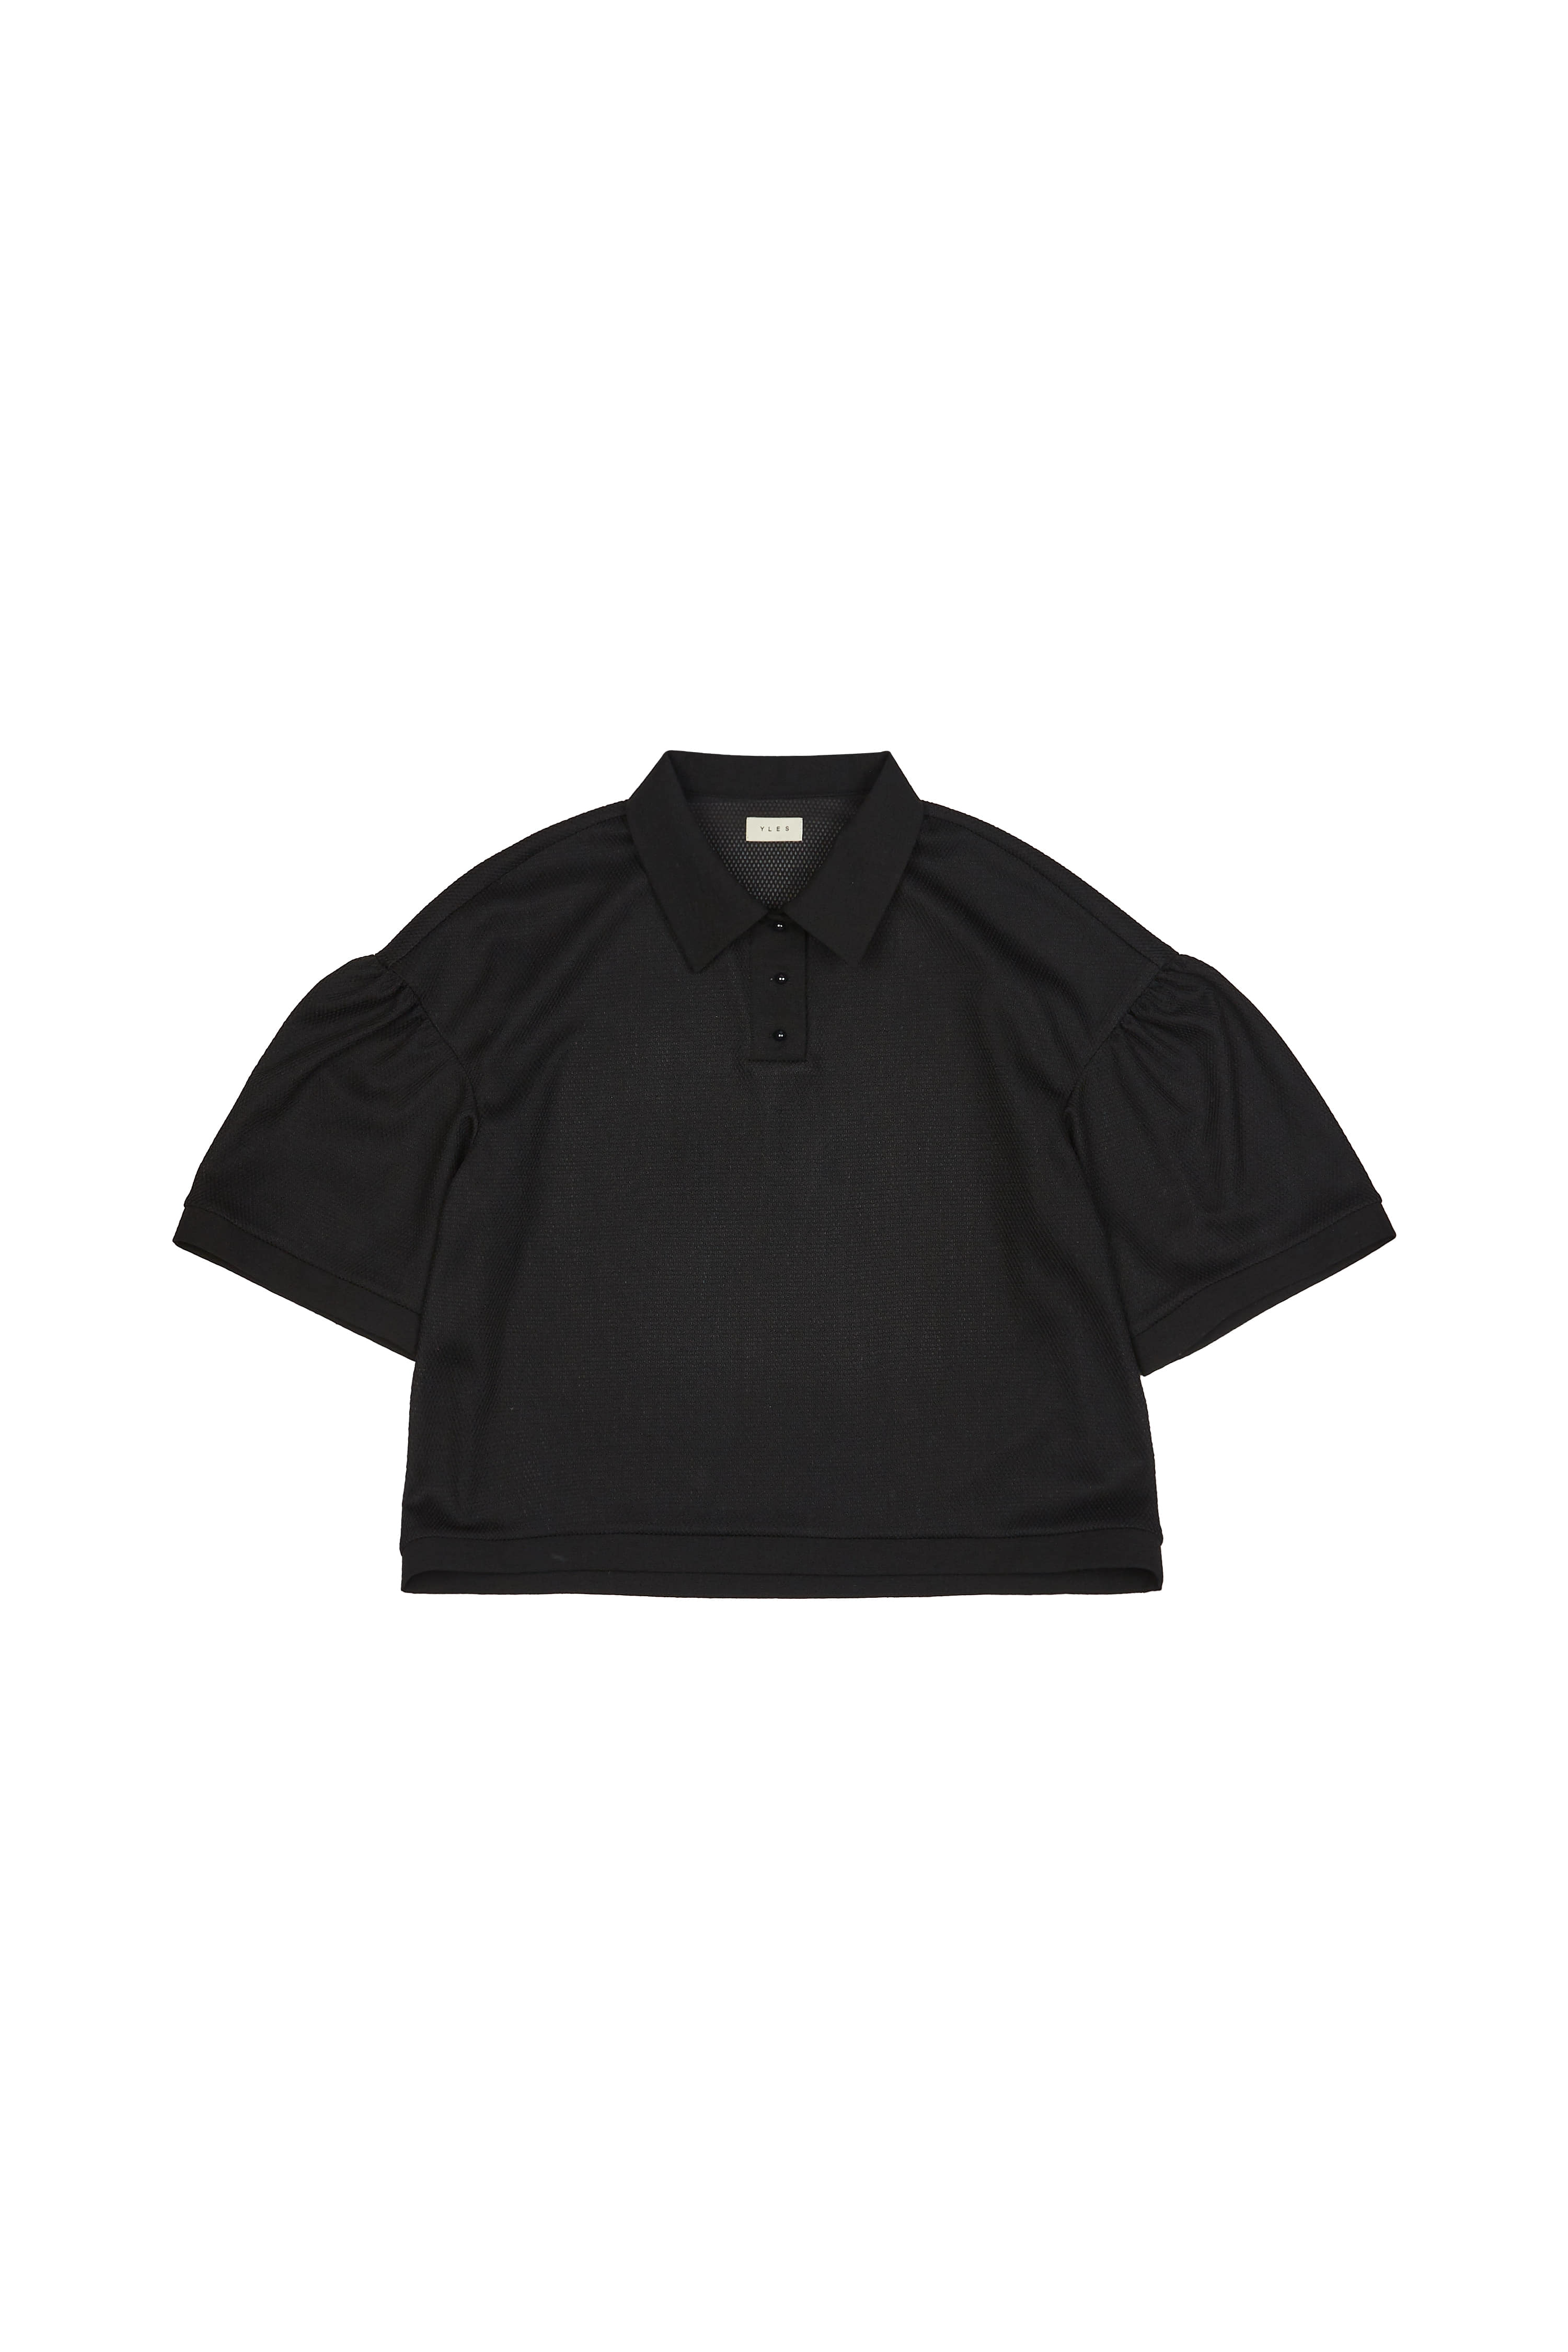 Daisy Polo Shirts (Black)